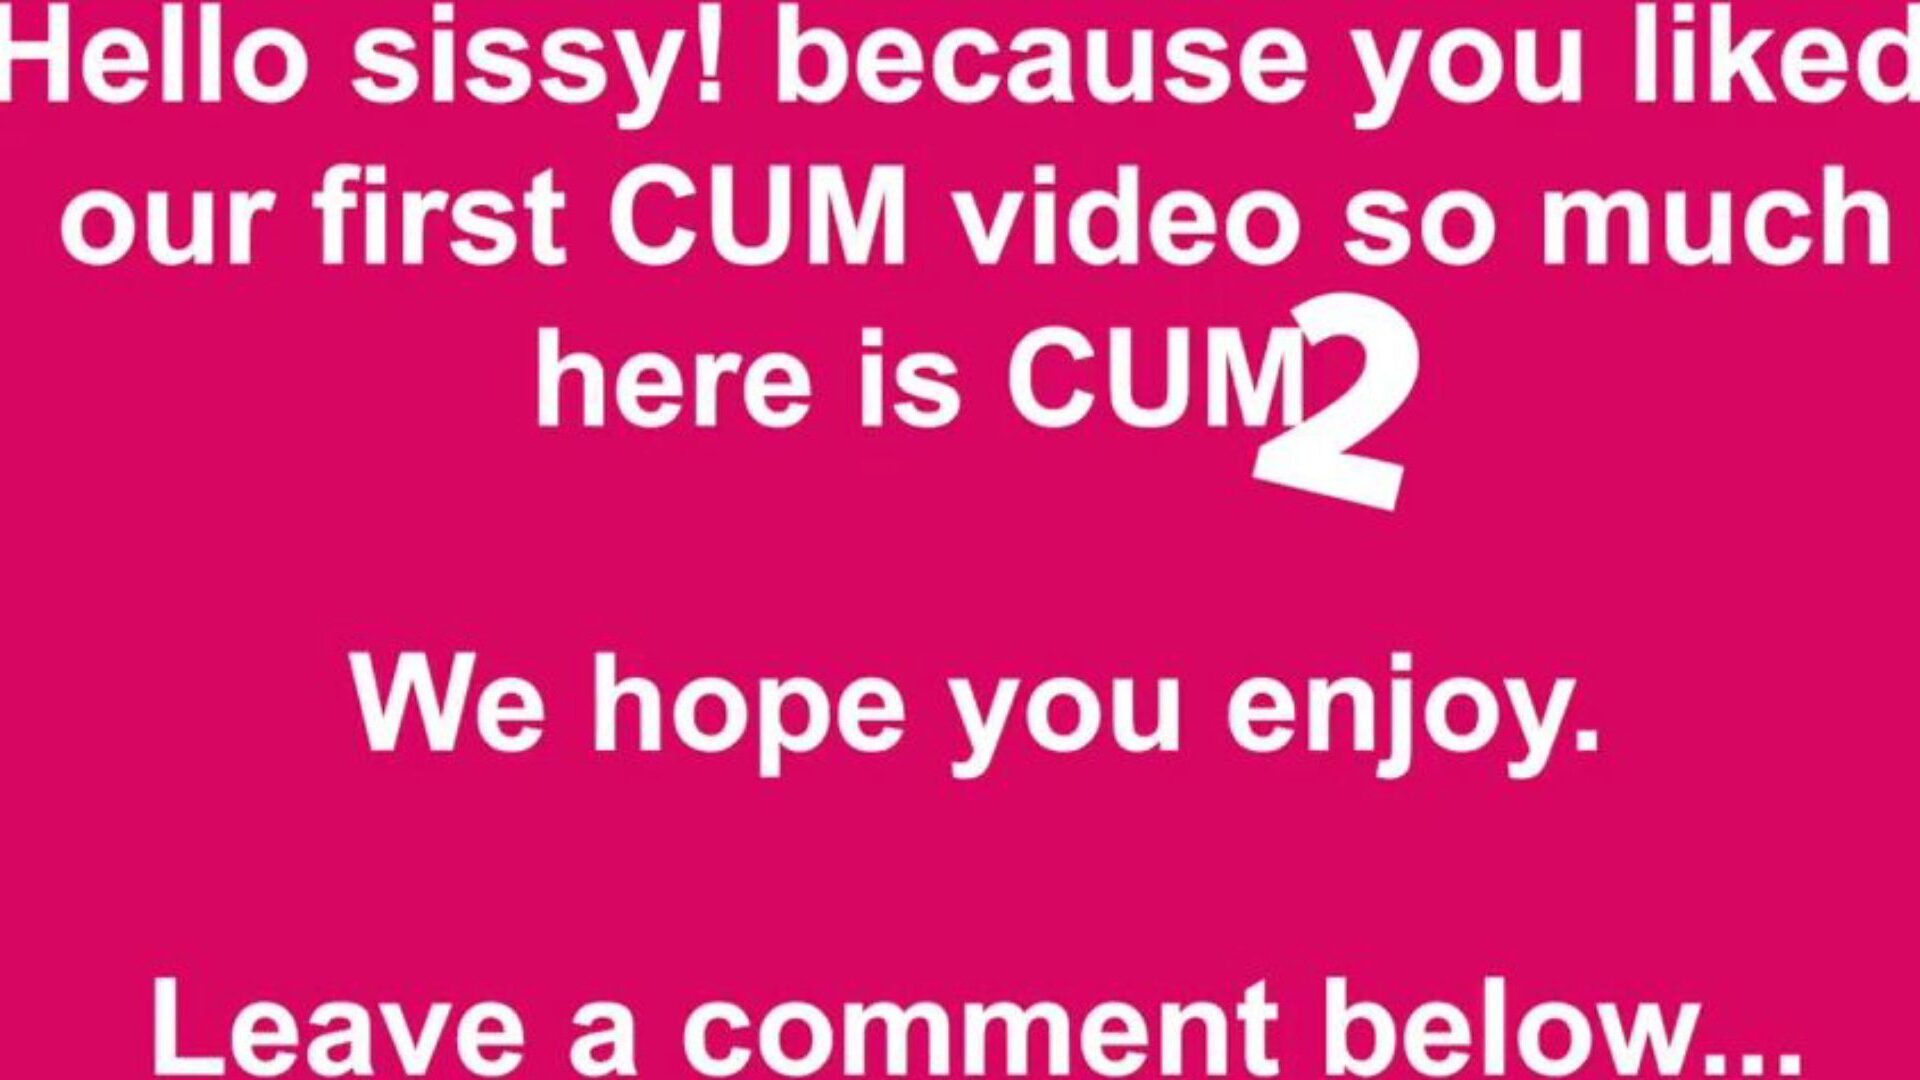 cum to gratis cum & cumming tube porno video 49 - xhamster se cum to tube fuck-a-thon video gratis på xhamster, med den imperious samling af gratis cum cumming tube & tube 2 hd porno film episoder